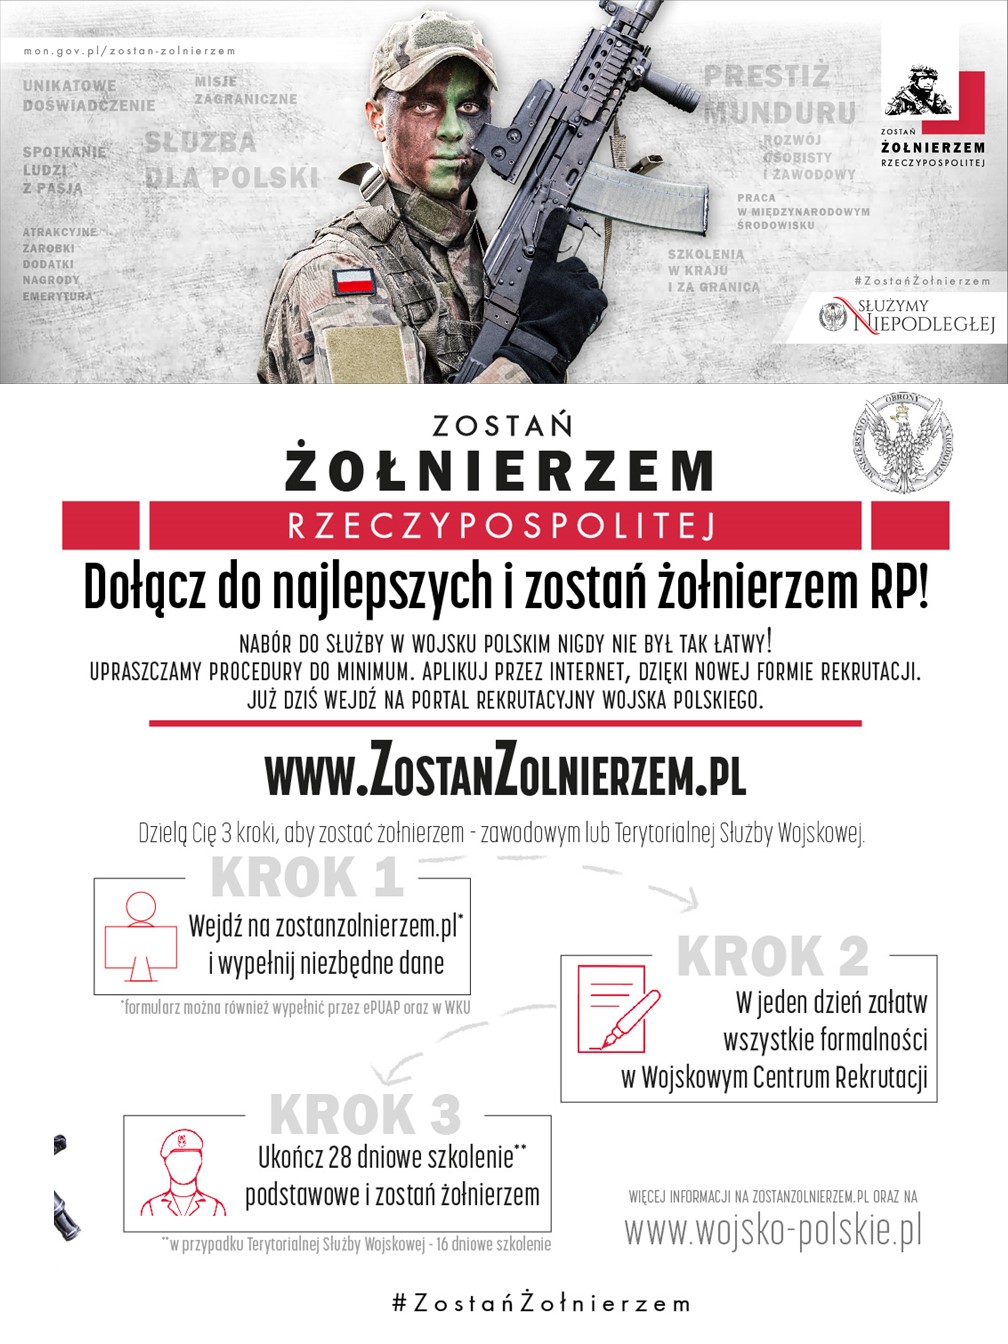 www.zostanzolnierzem.pl